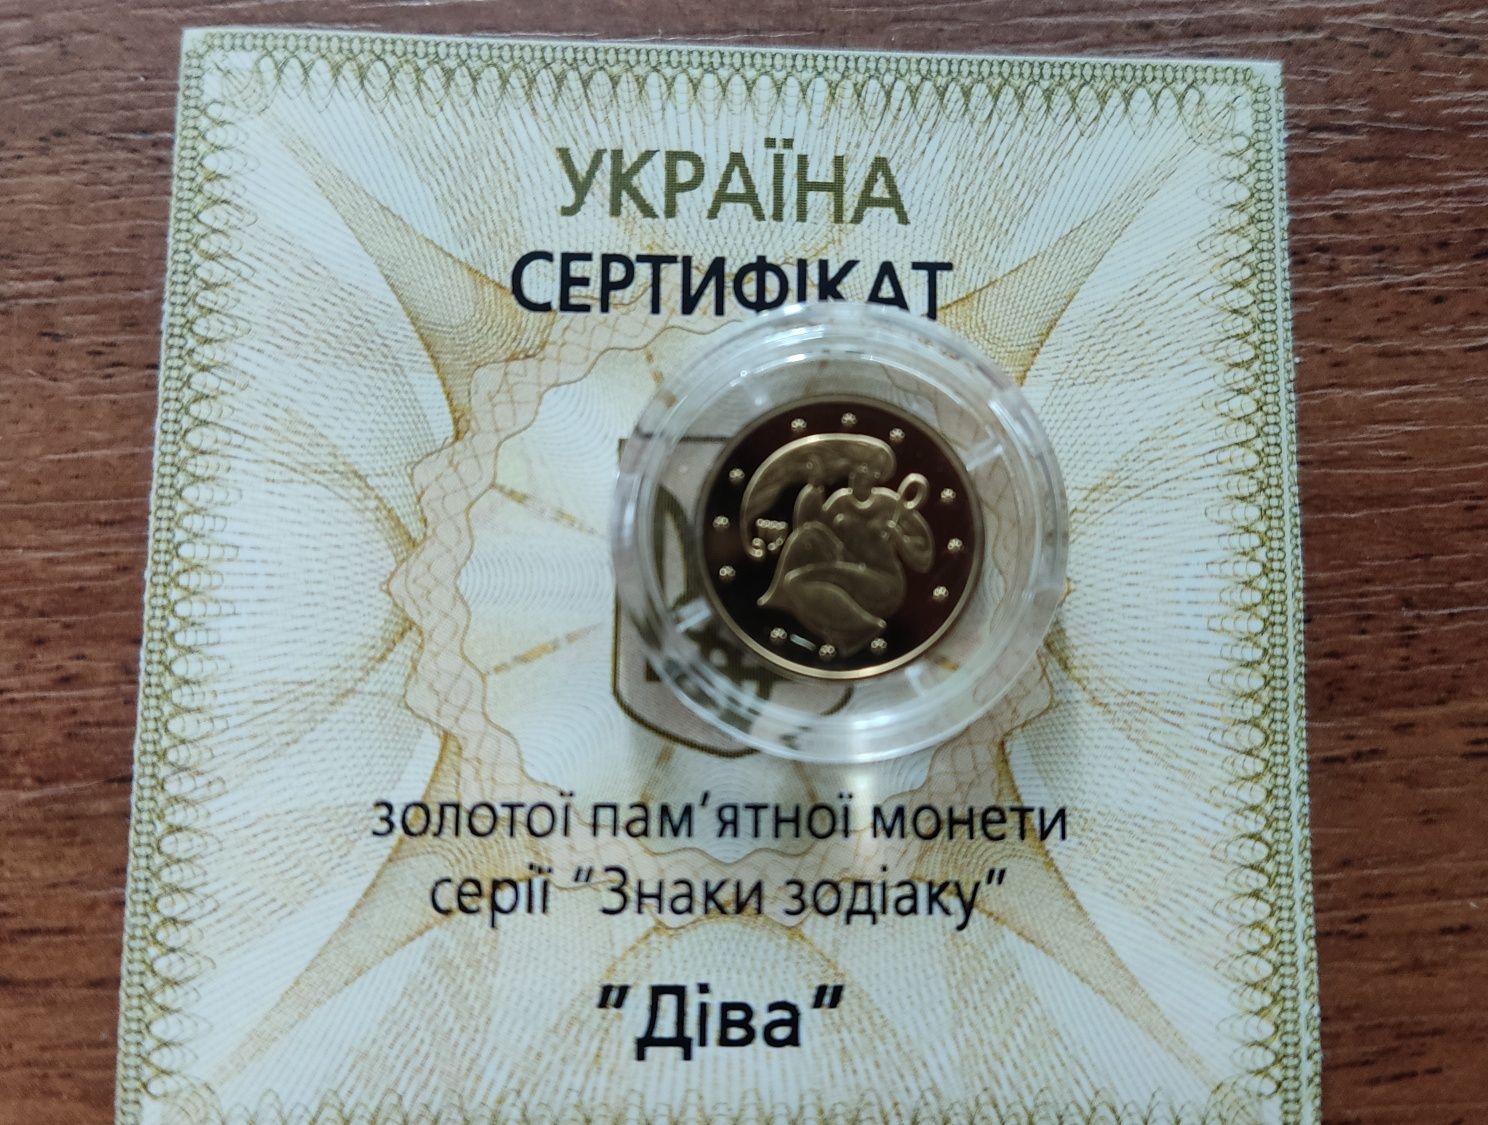 Золотые монеты НБУ 2 грн. "Черепаха" и "Дева"